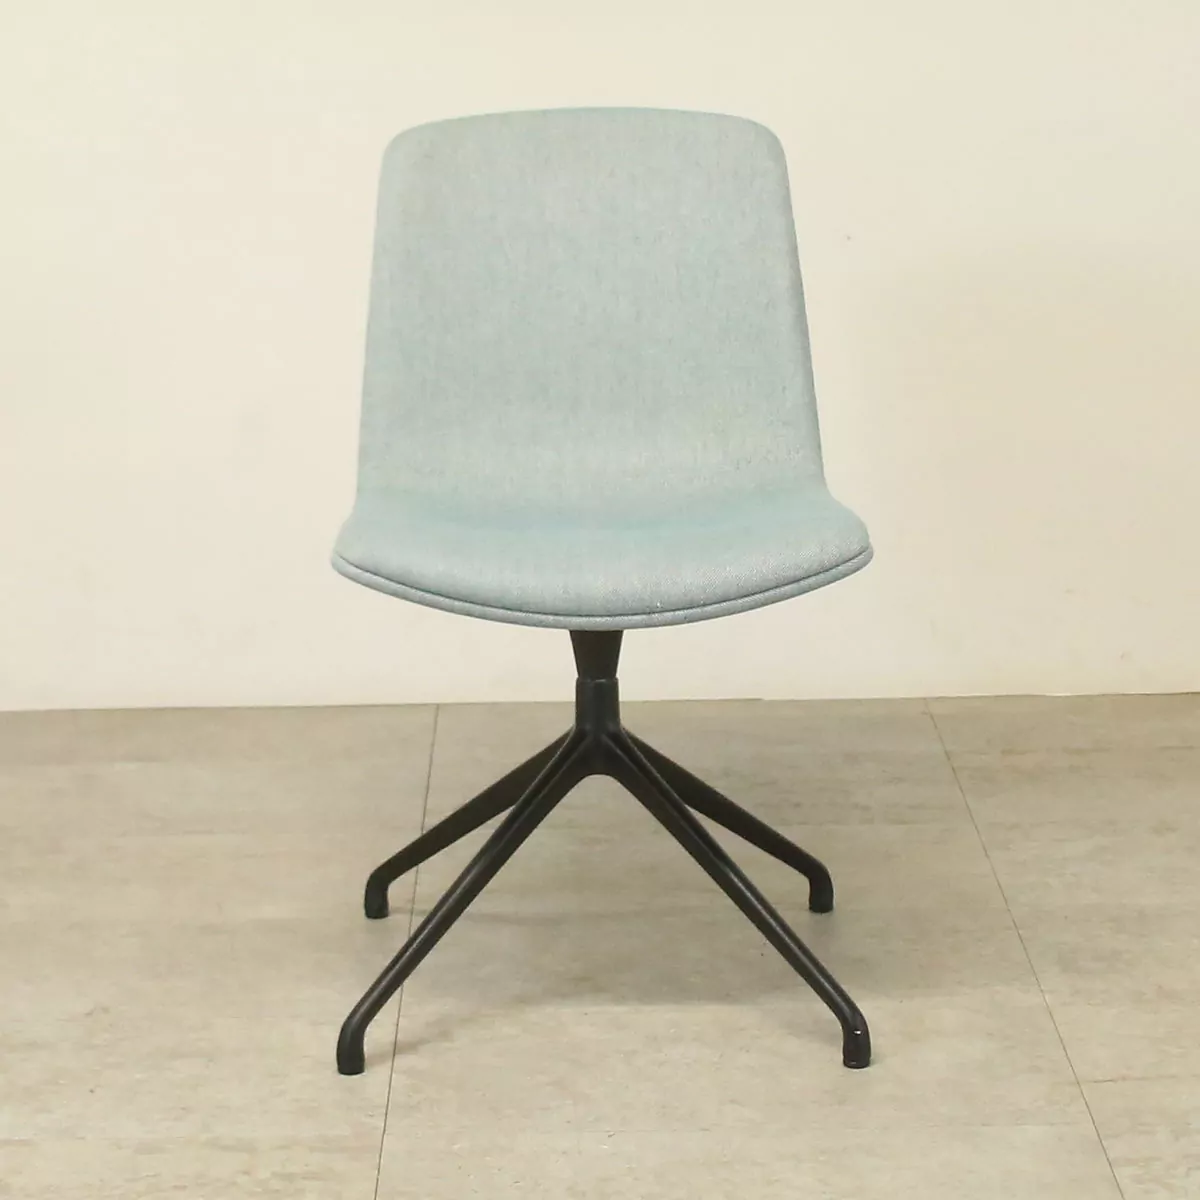 Orangebox Cubb-04 Blue Meeting Chair